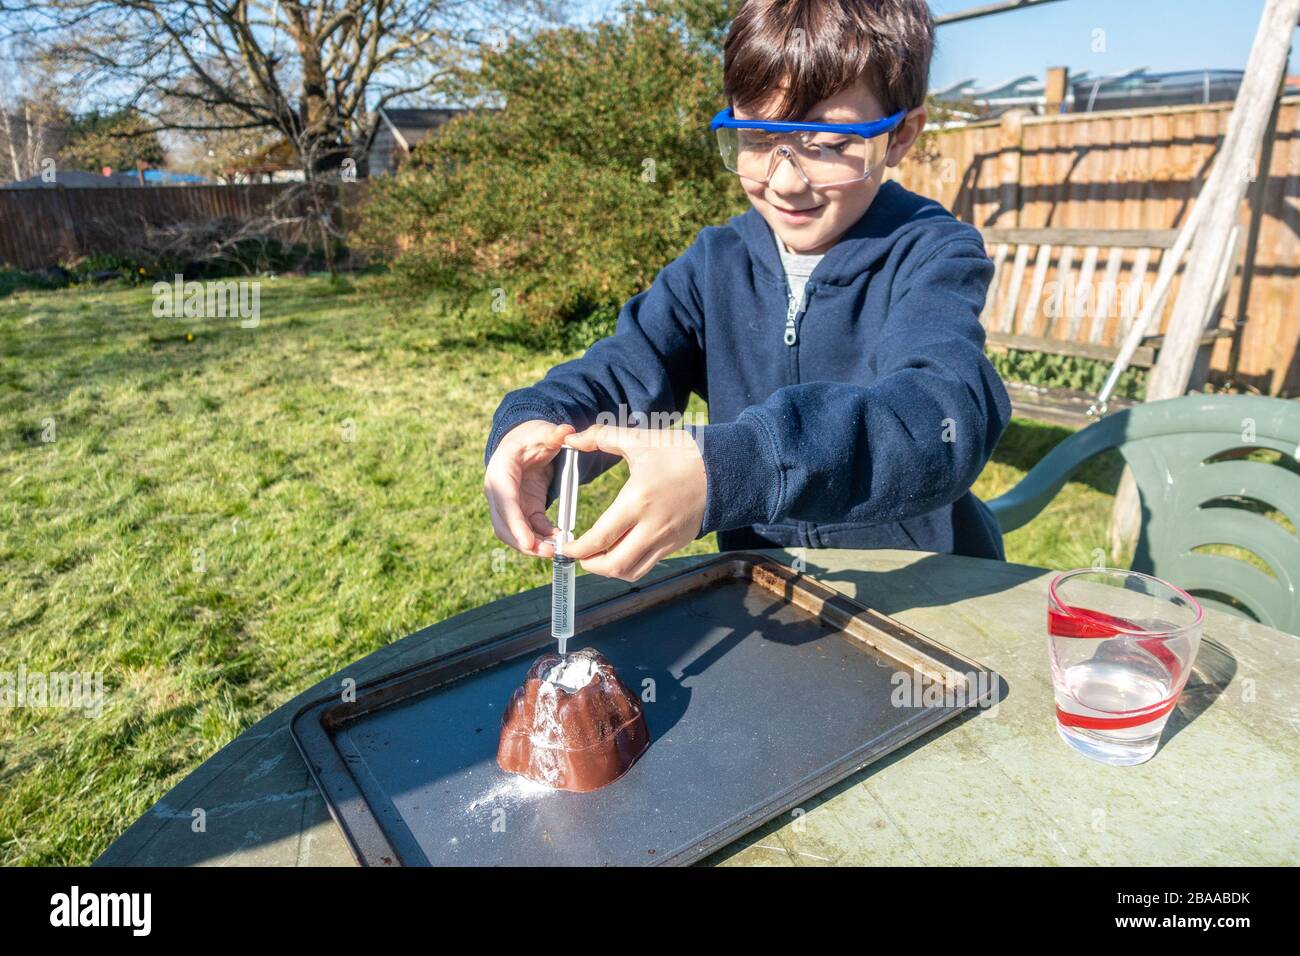 Un ragazzo fa un esperimento scientifico nel giardino mescolando aceto e bicarbonato di soda per simulare un'eruzione vulcanica. Foto Stock